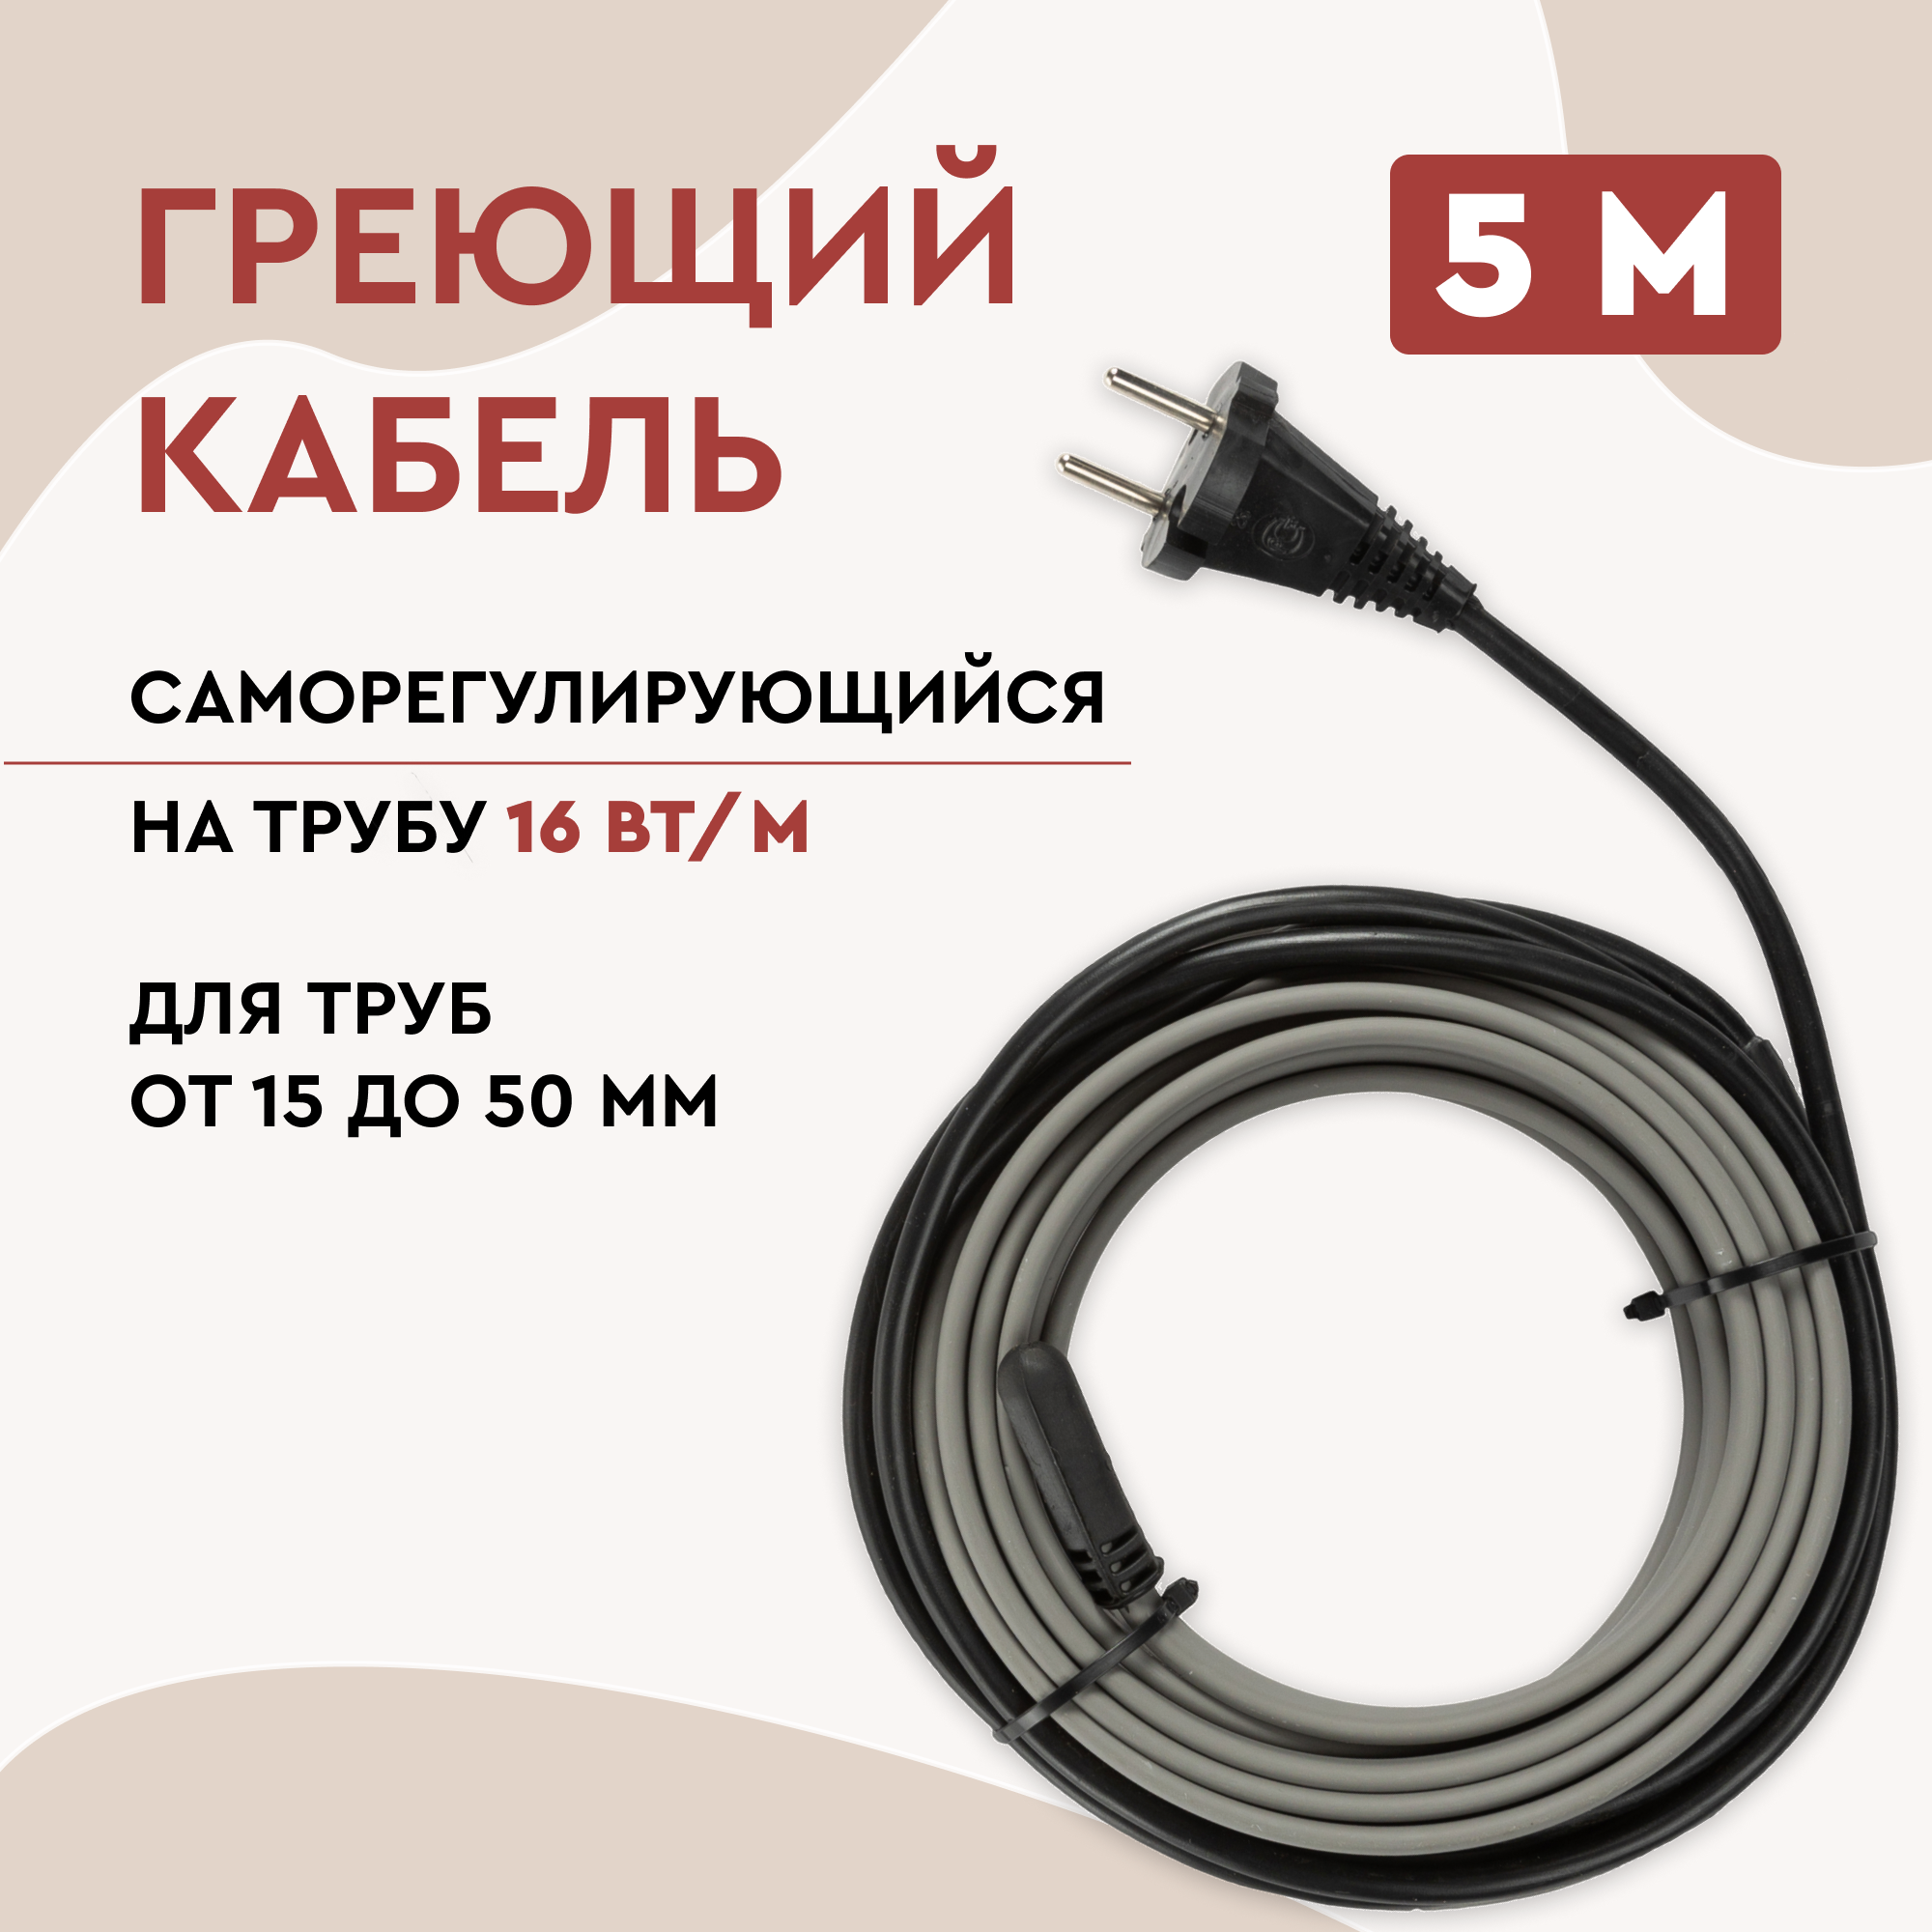 Греющий кабель Lite на трубу 5м 80Вт